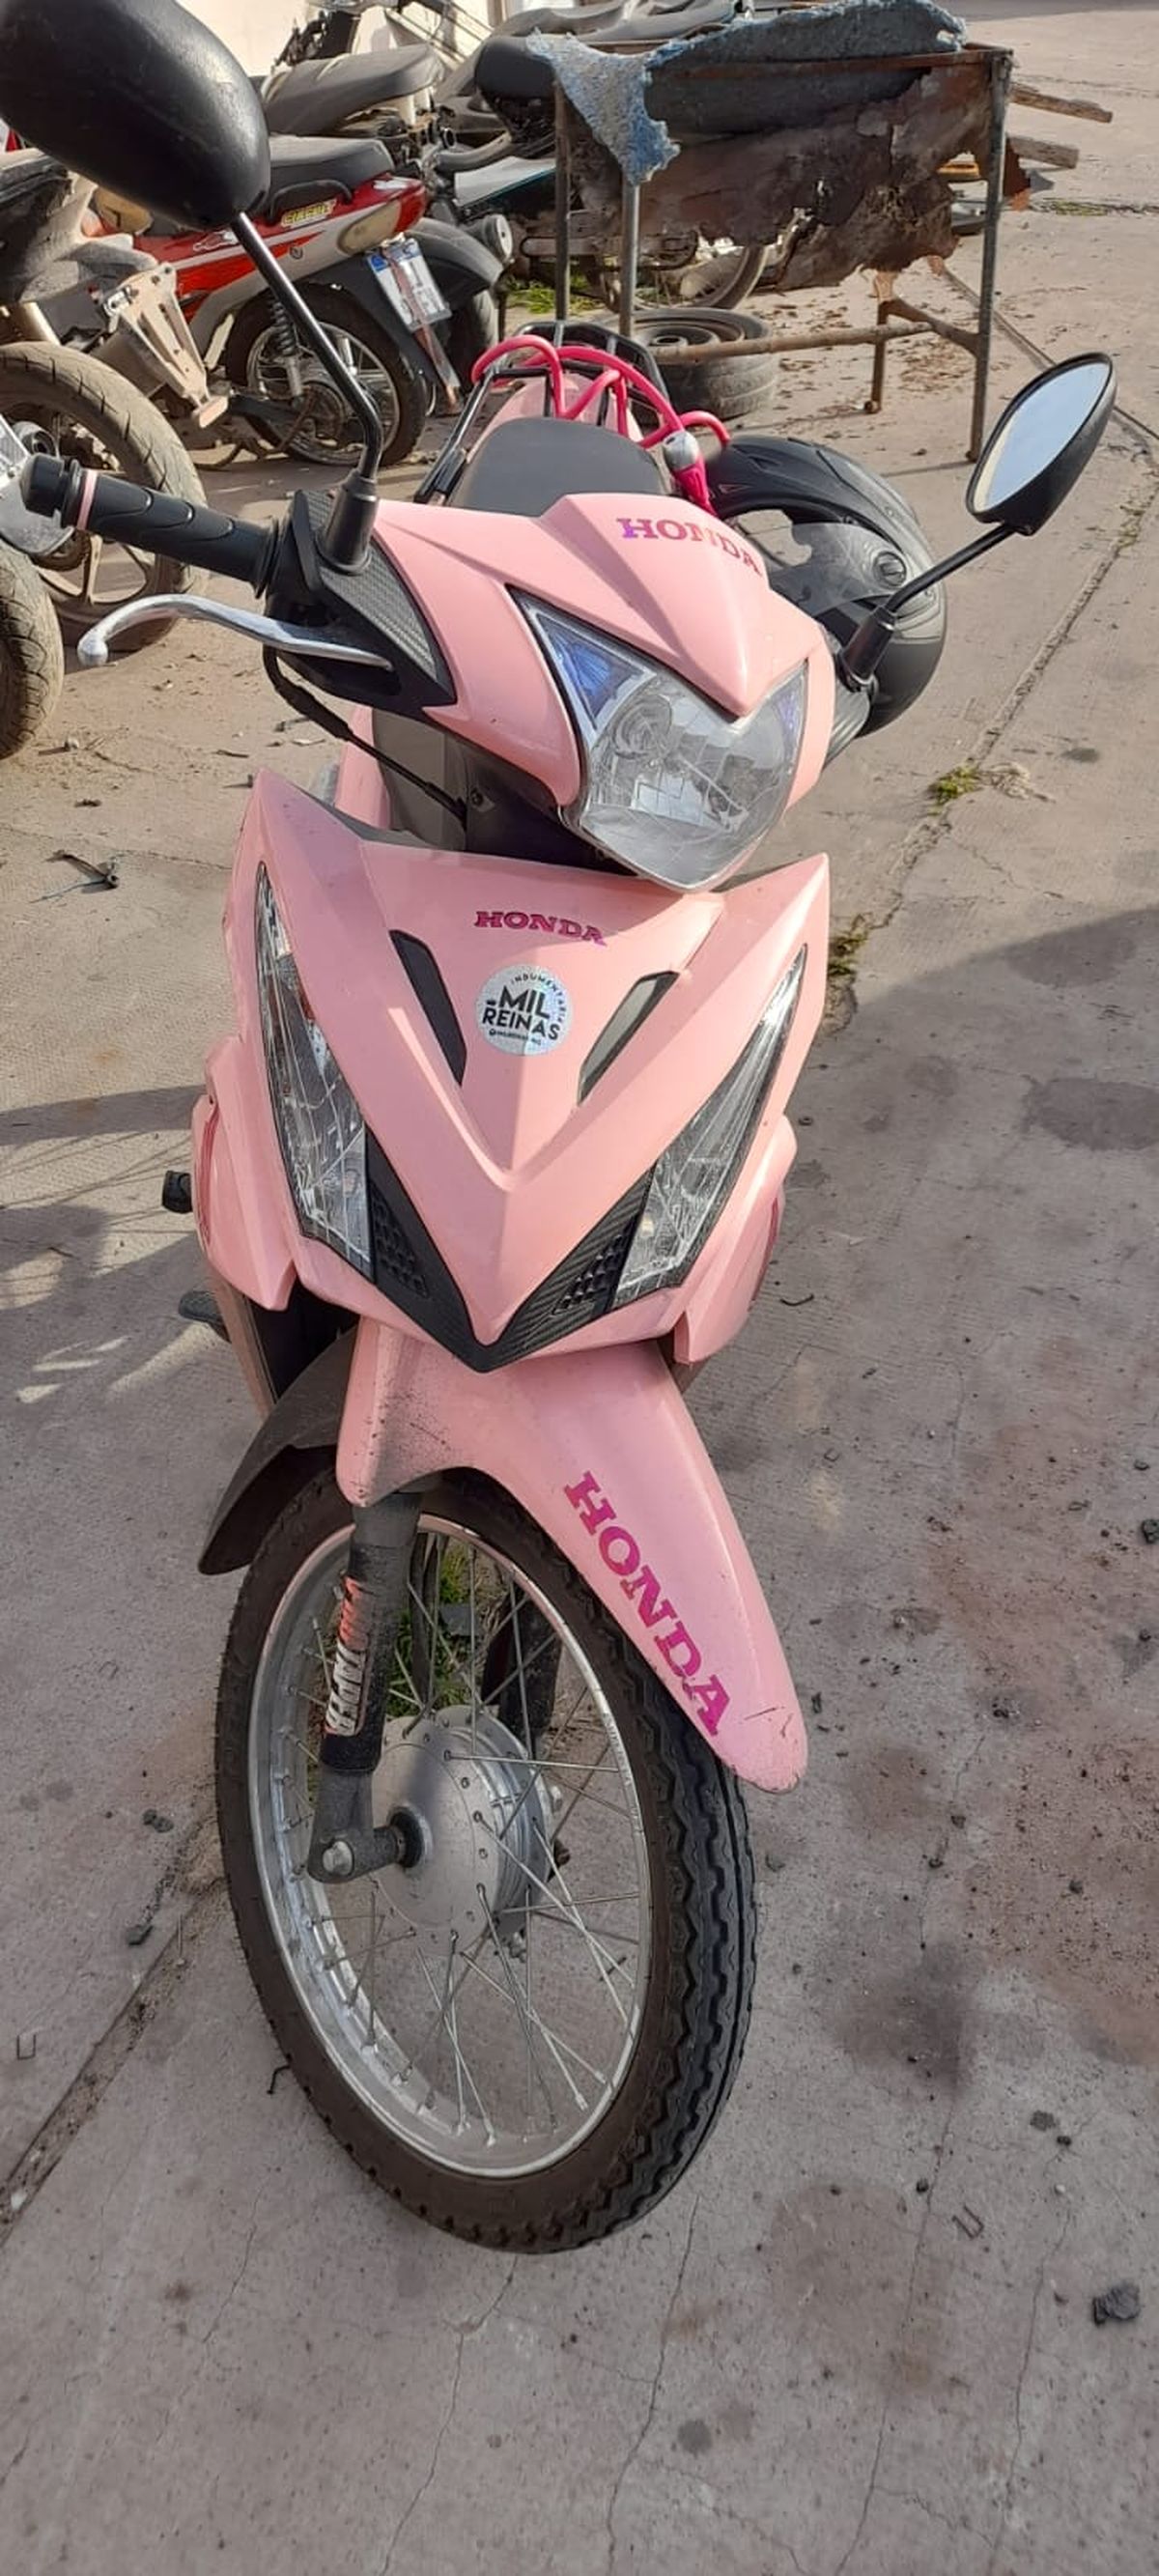 La moto robada que fue hallada en el otro operativo realizado en Esteban Echeverría.